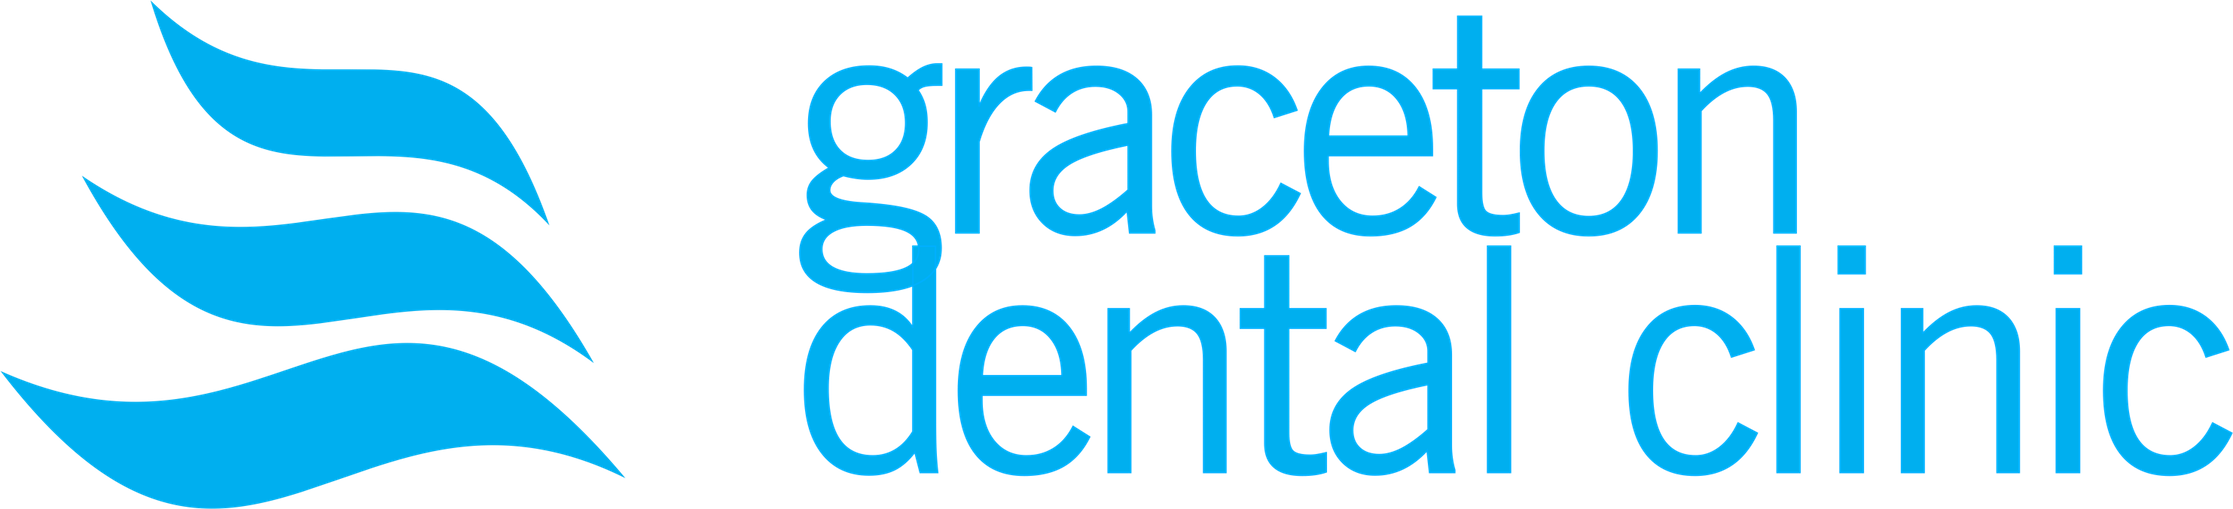 Graceton Dental